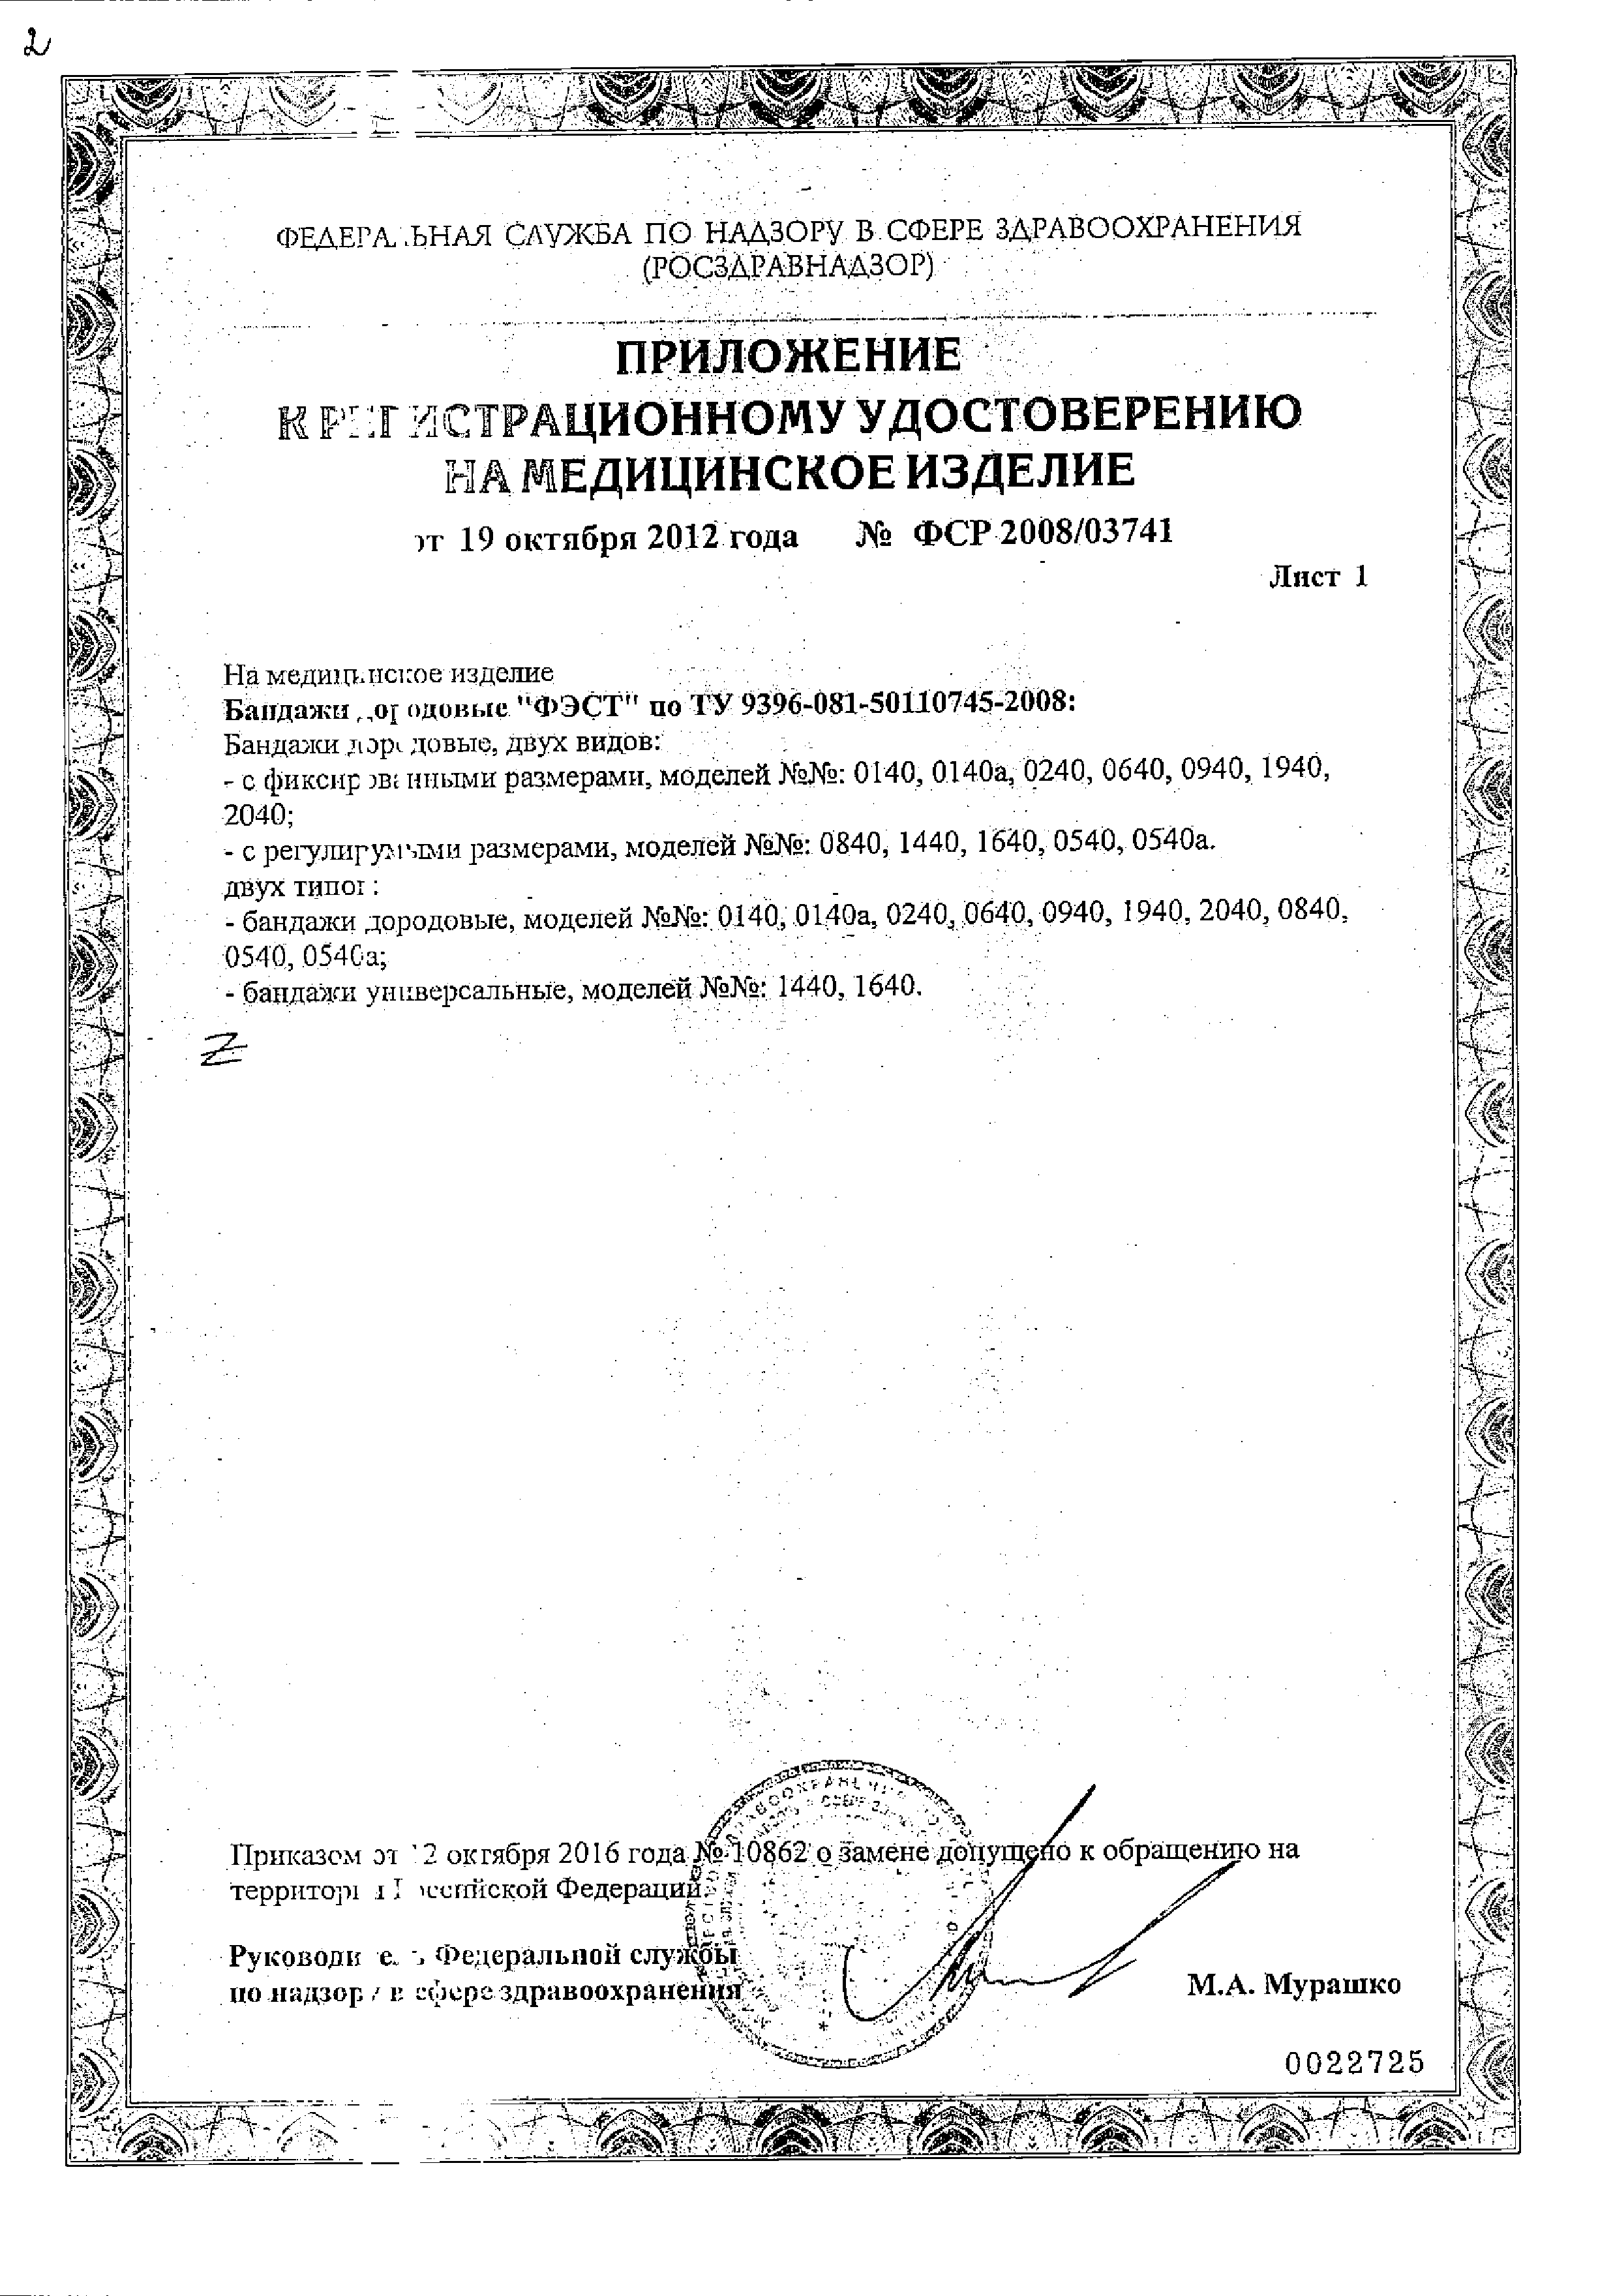 Бандаж дородовой универсальный ФЭСТ сертификат